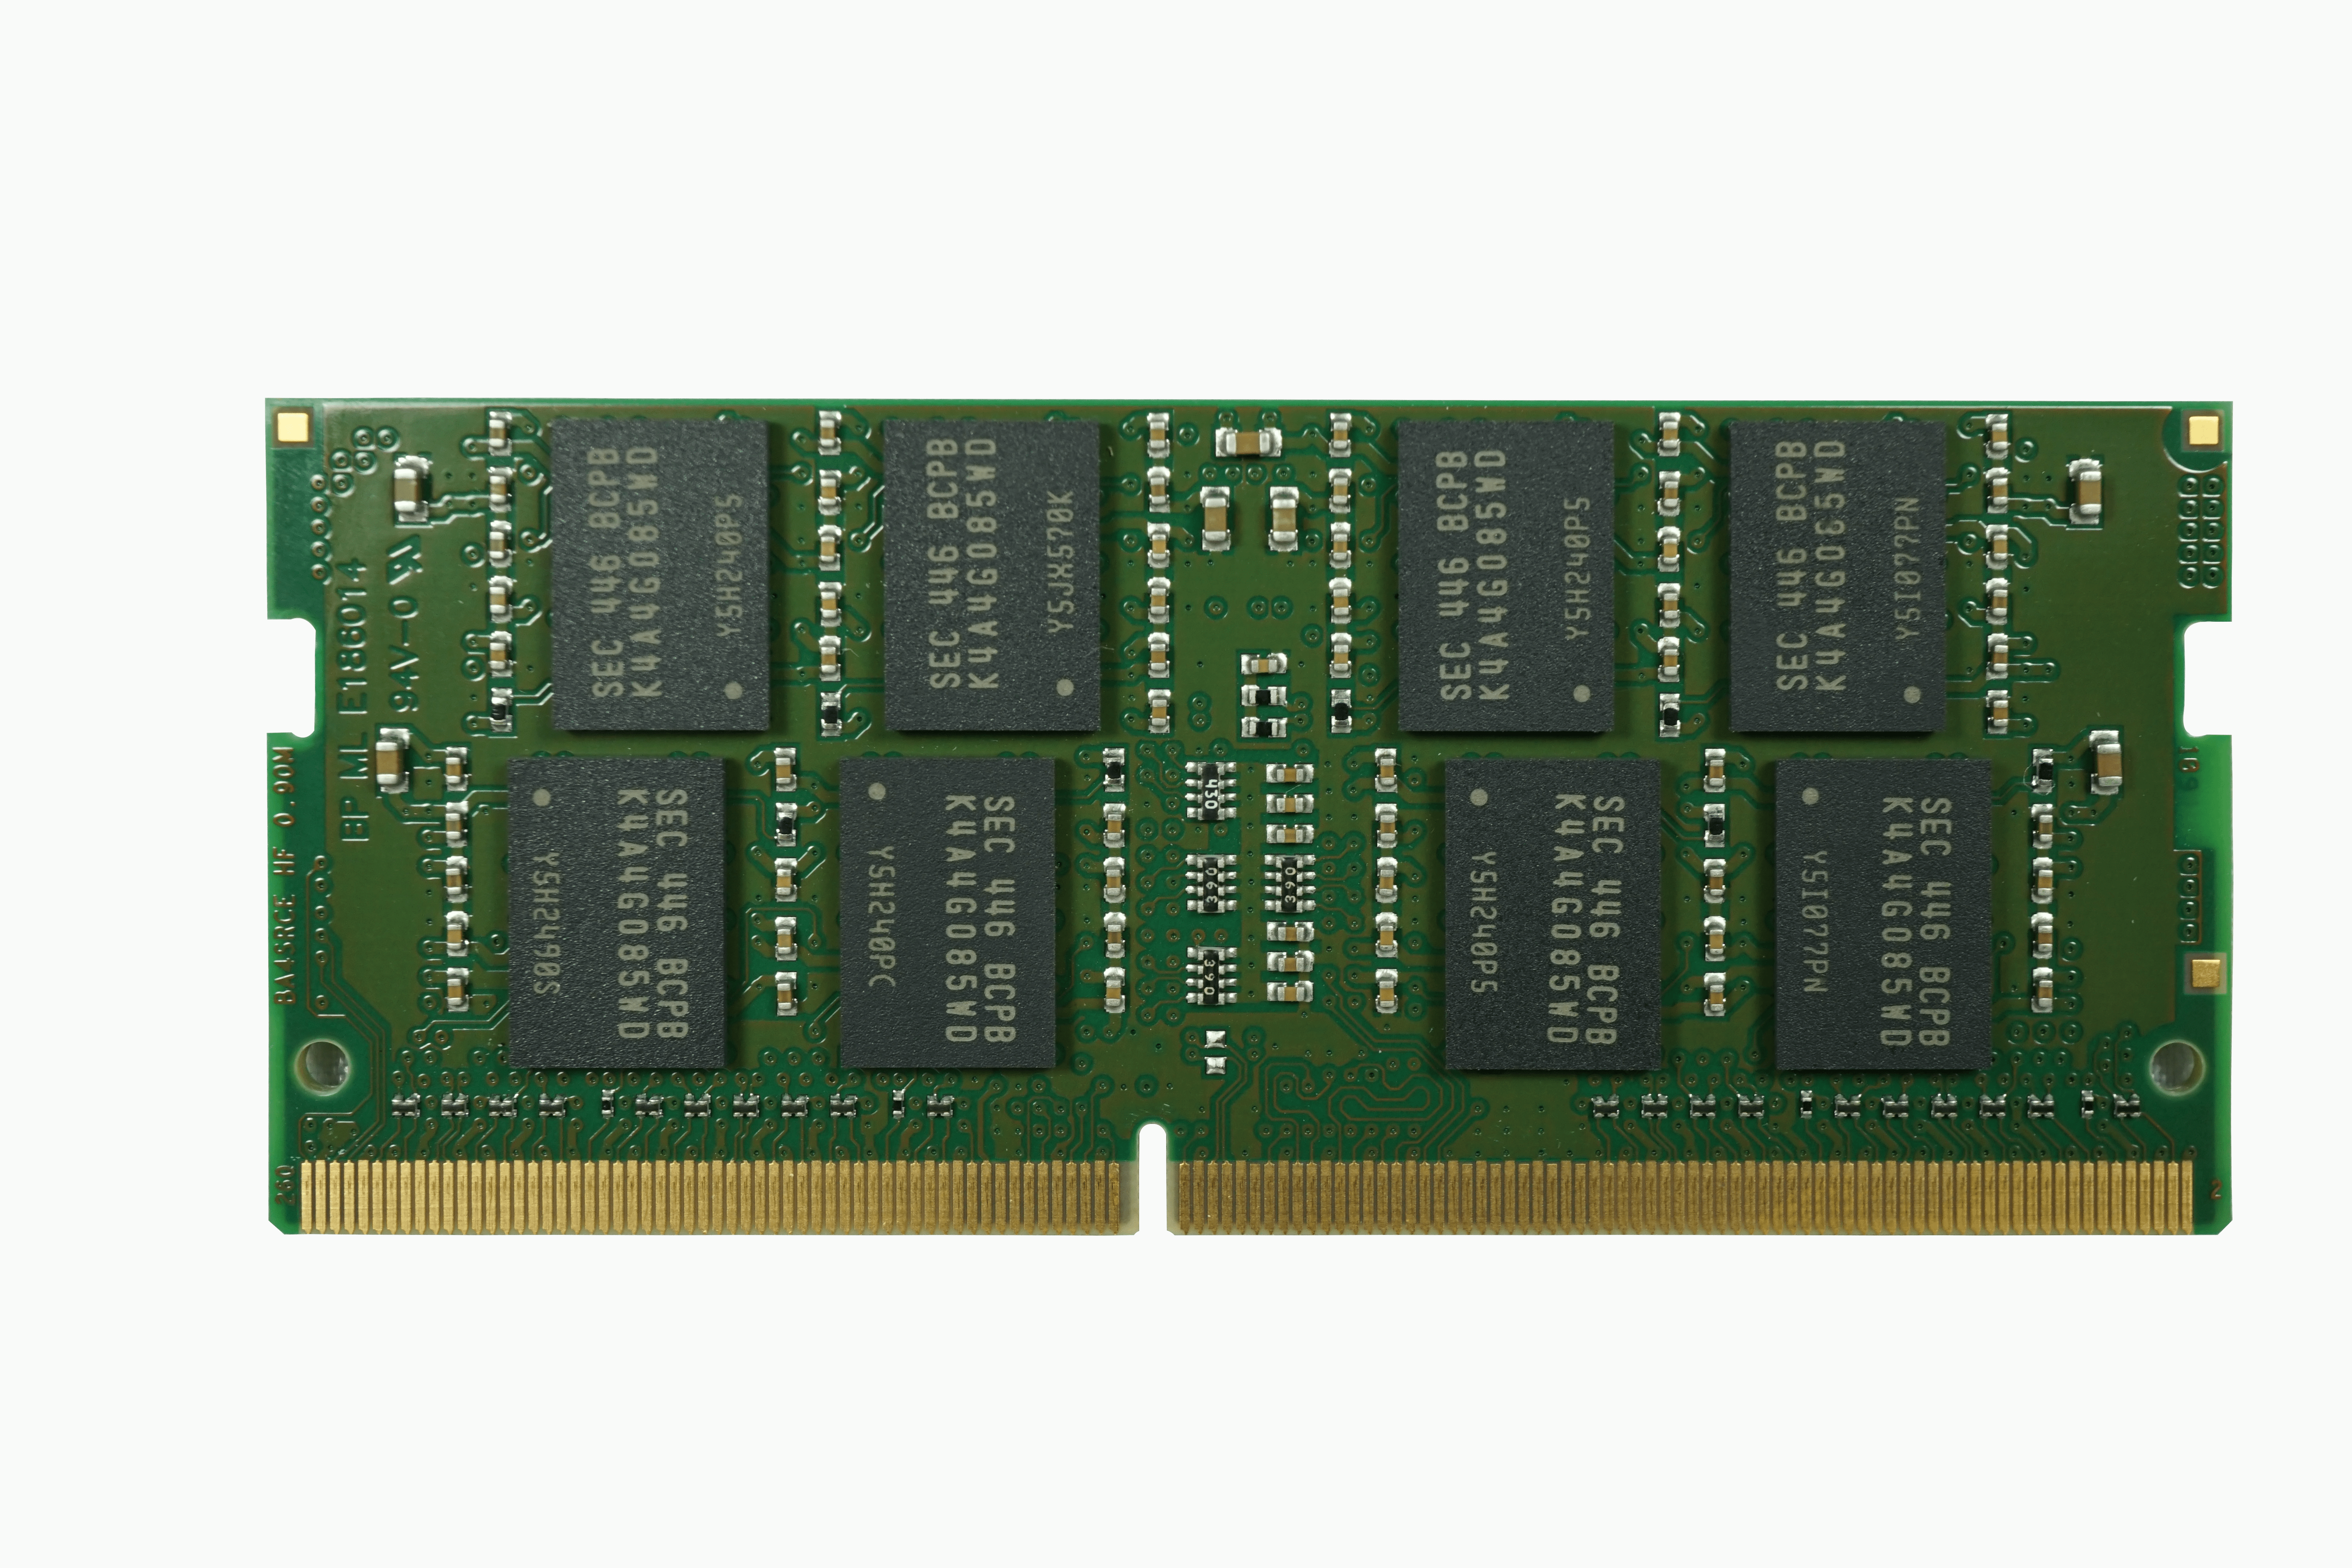 8GB DDR4 2666 MT/s SO-DIMM